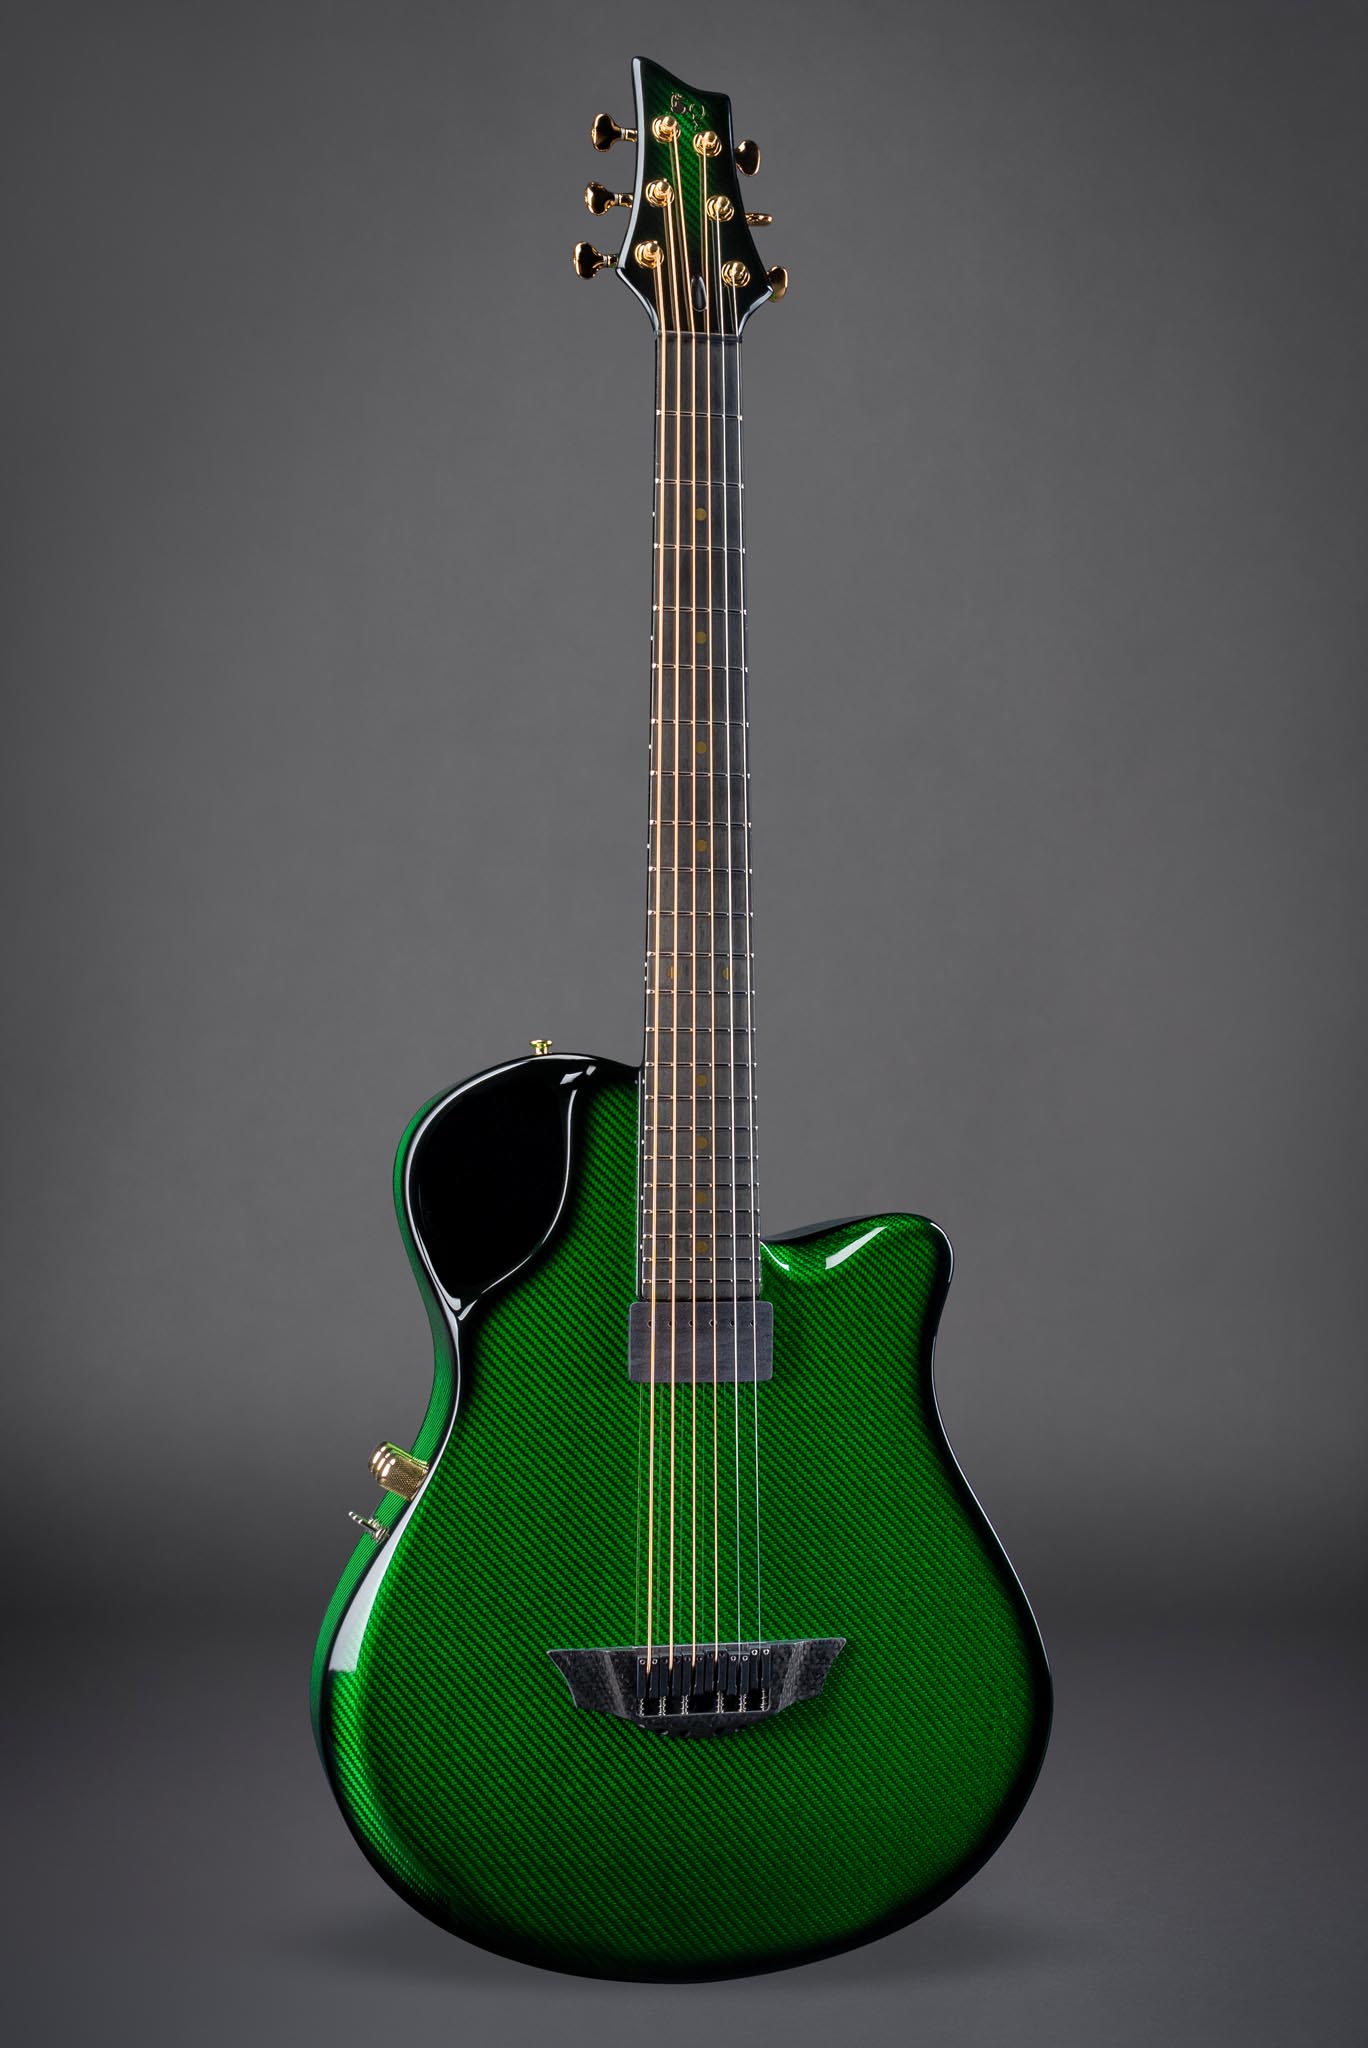 X10 Vibrant Green - Emerald Guitars